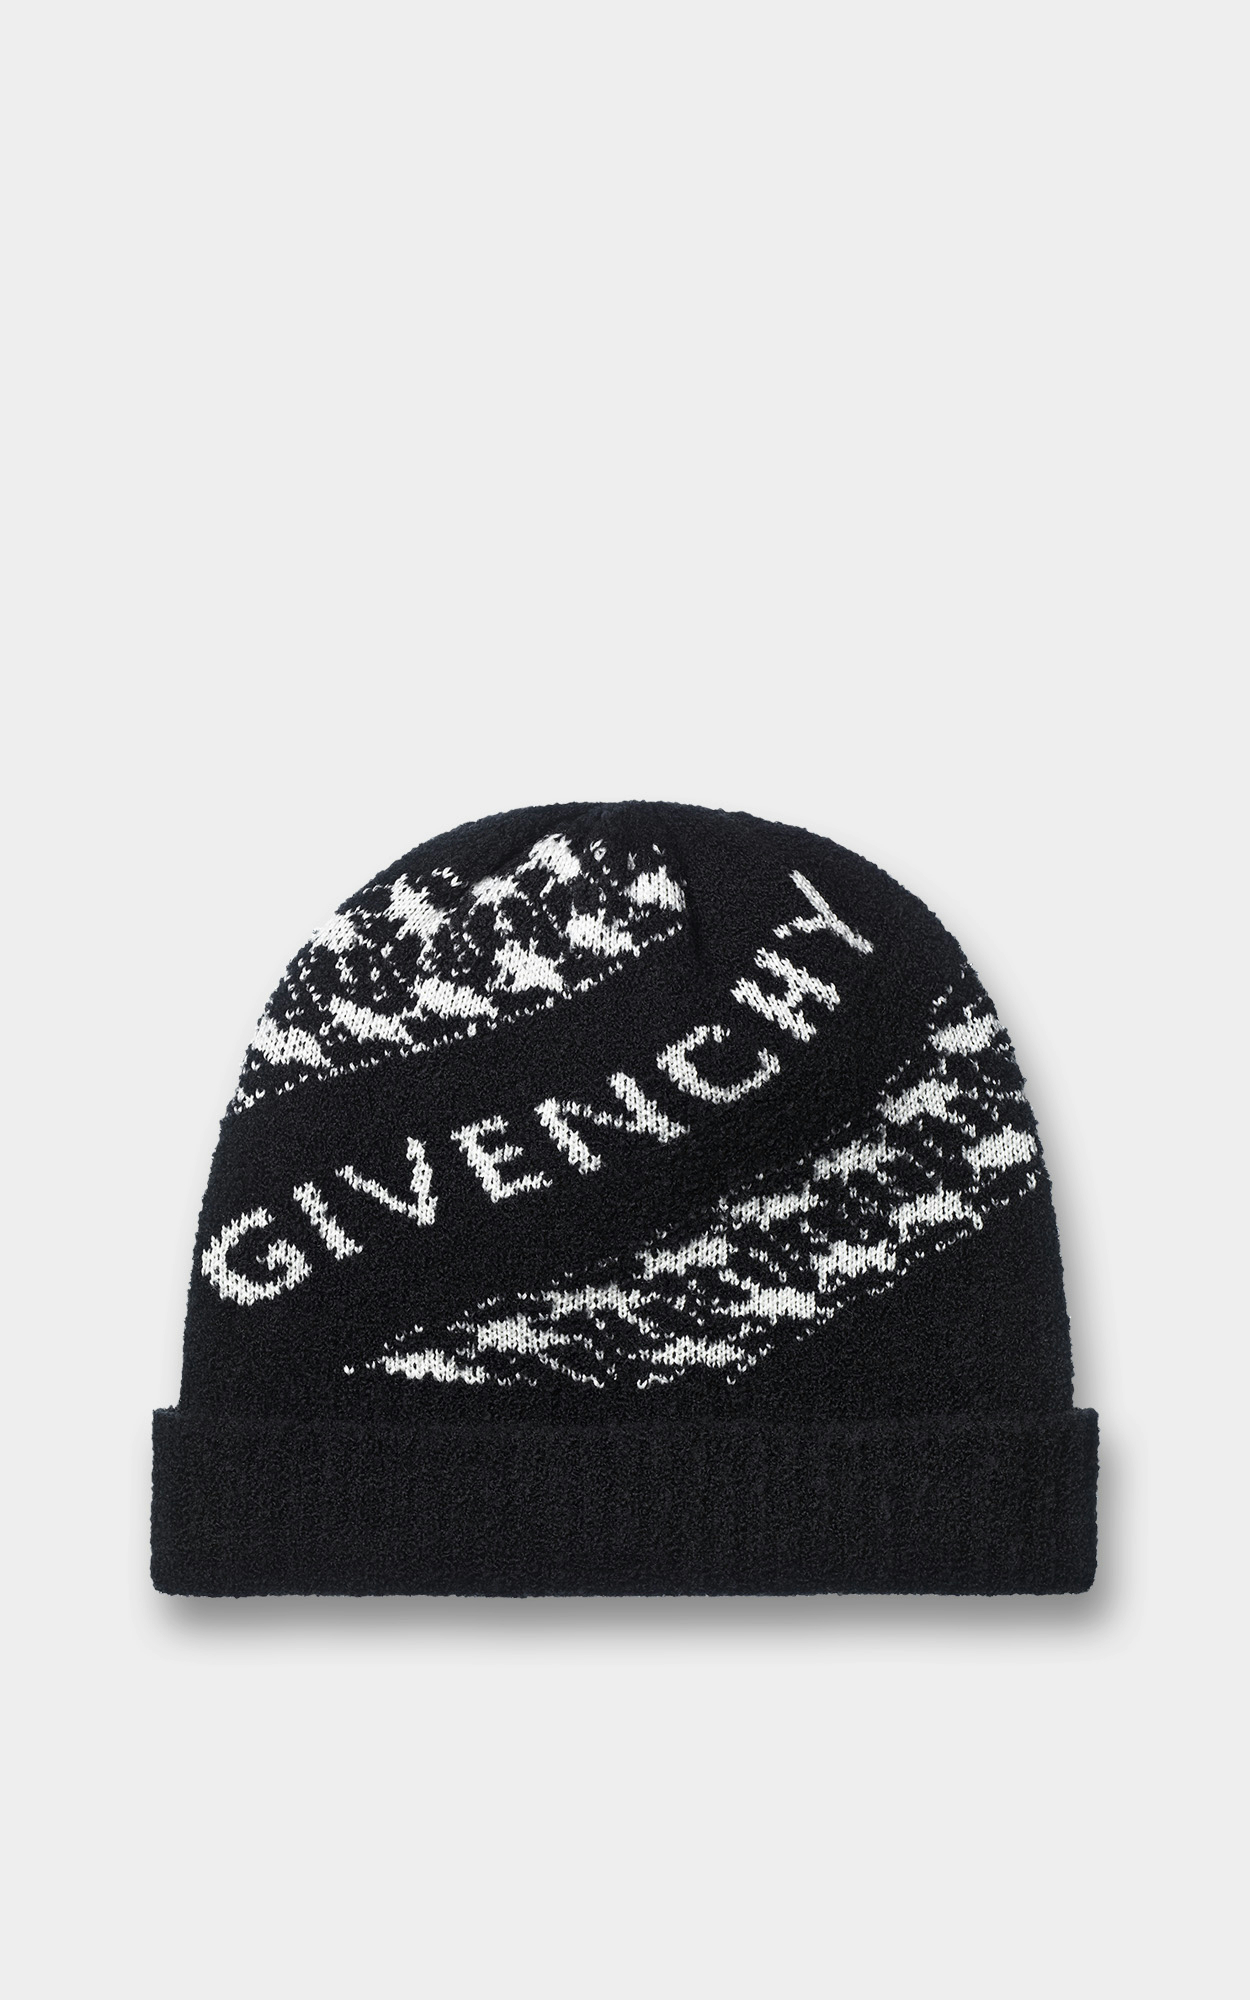 Givenchy - Schwarze Mütze mit Ketten-Design